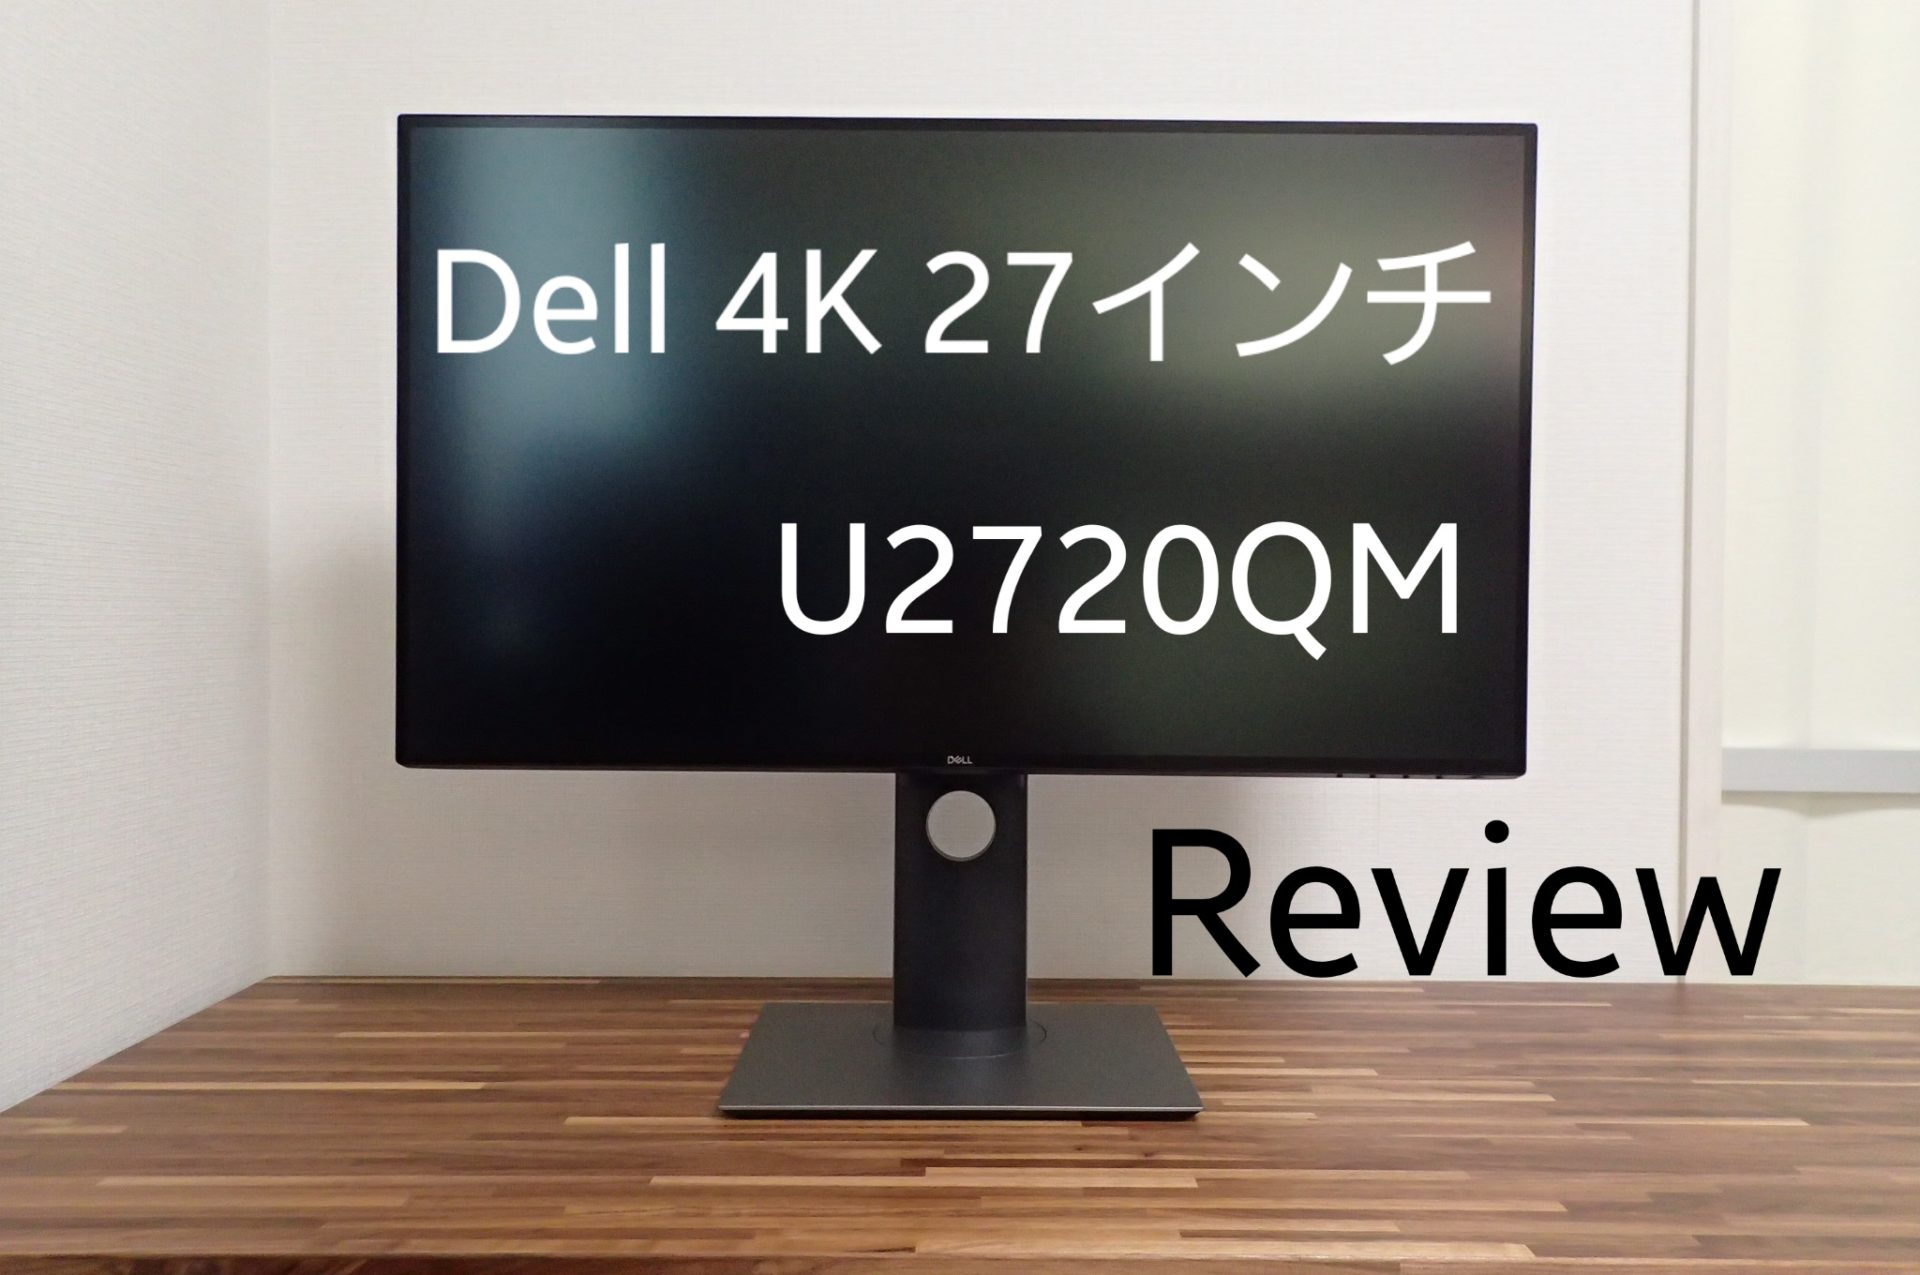 4K 27インチの最適解】Dell U2720QM レビュー【PS5にもおすすめ】 - Tip Gadget